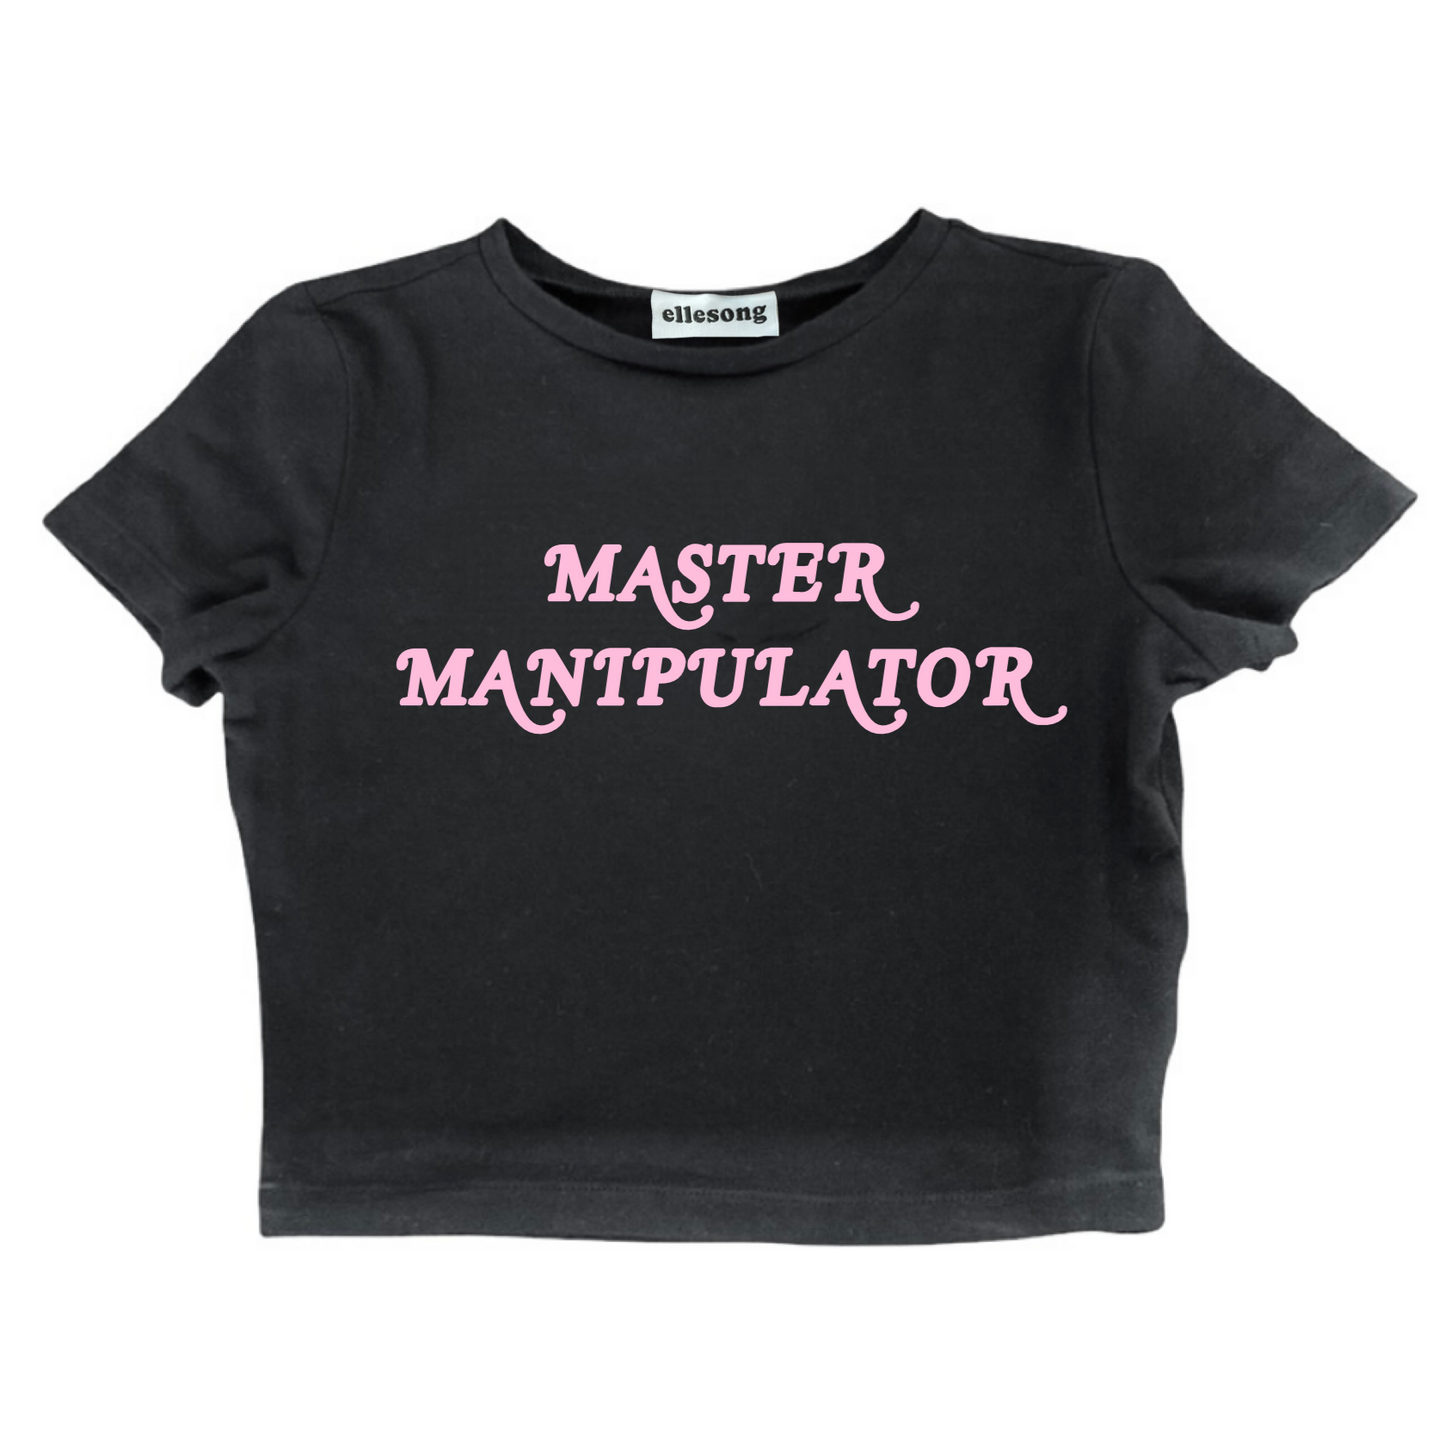 Master Manipulator Baby Tee